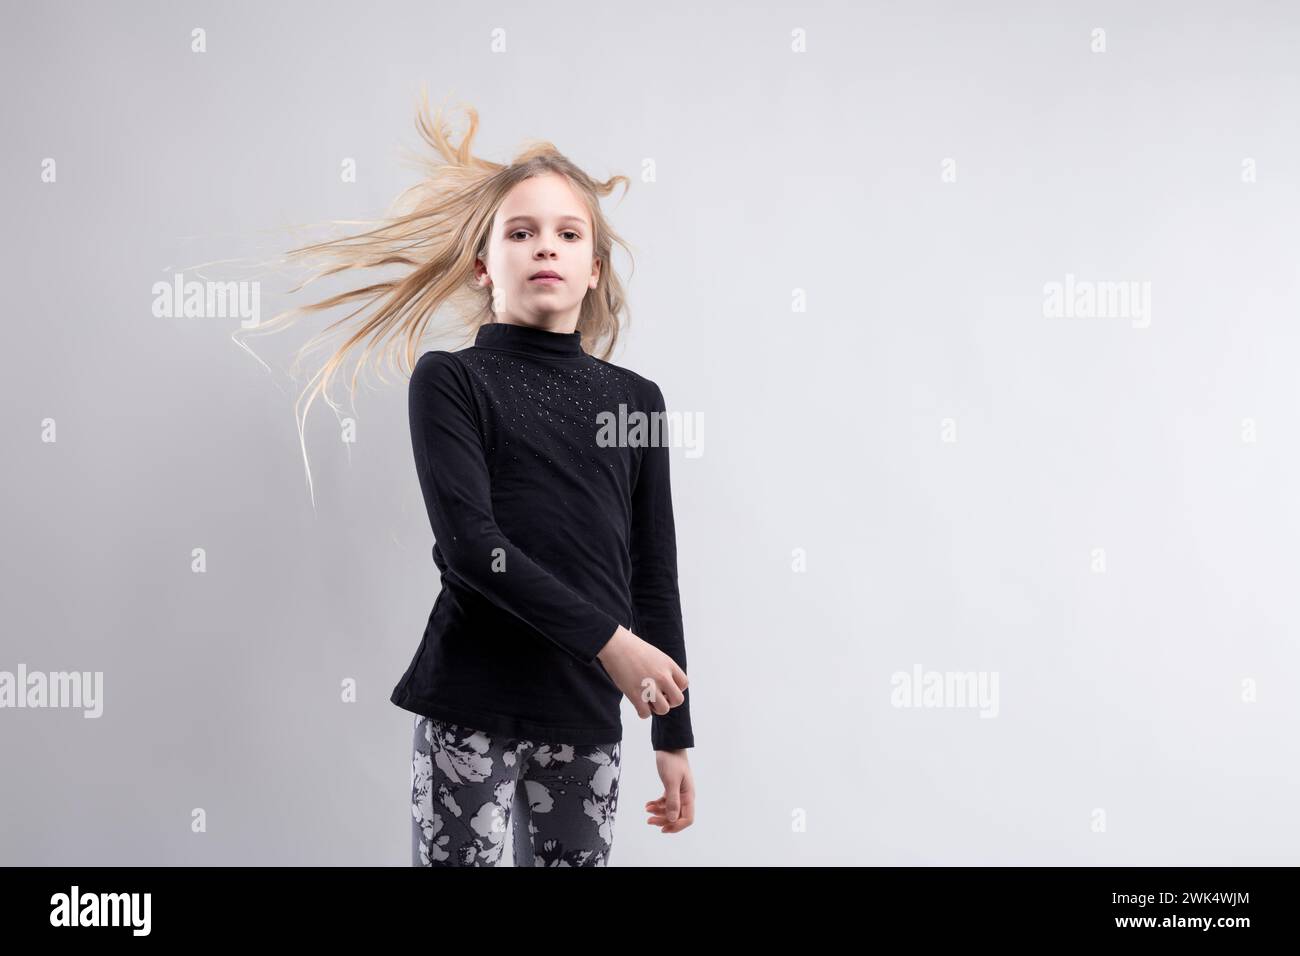 Les cheveux blonds s'enroulent autour de la silhouette d'une jeune fille, symbolisant la liberté et la spontanéité Banque D'Images